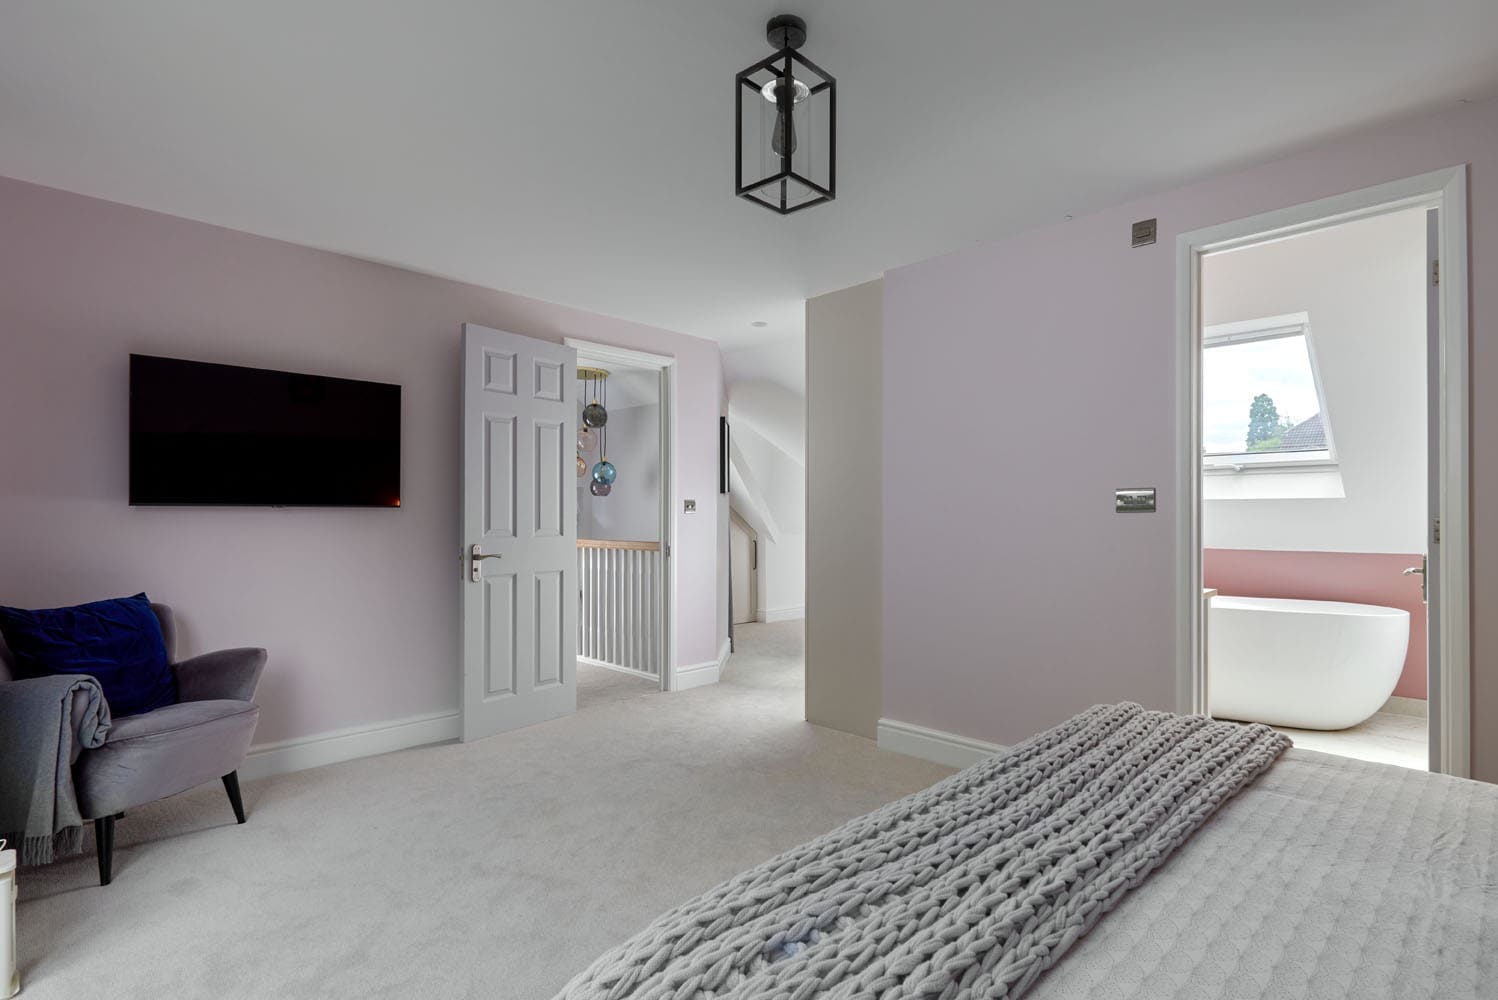 converted master bedroom loft in fleet with luxury en-suite bathroom